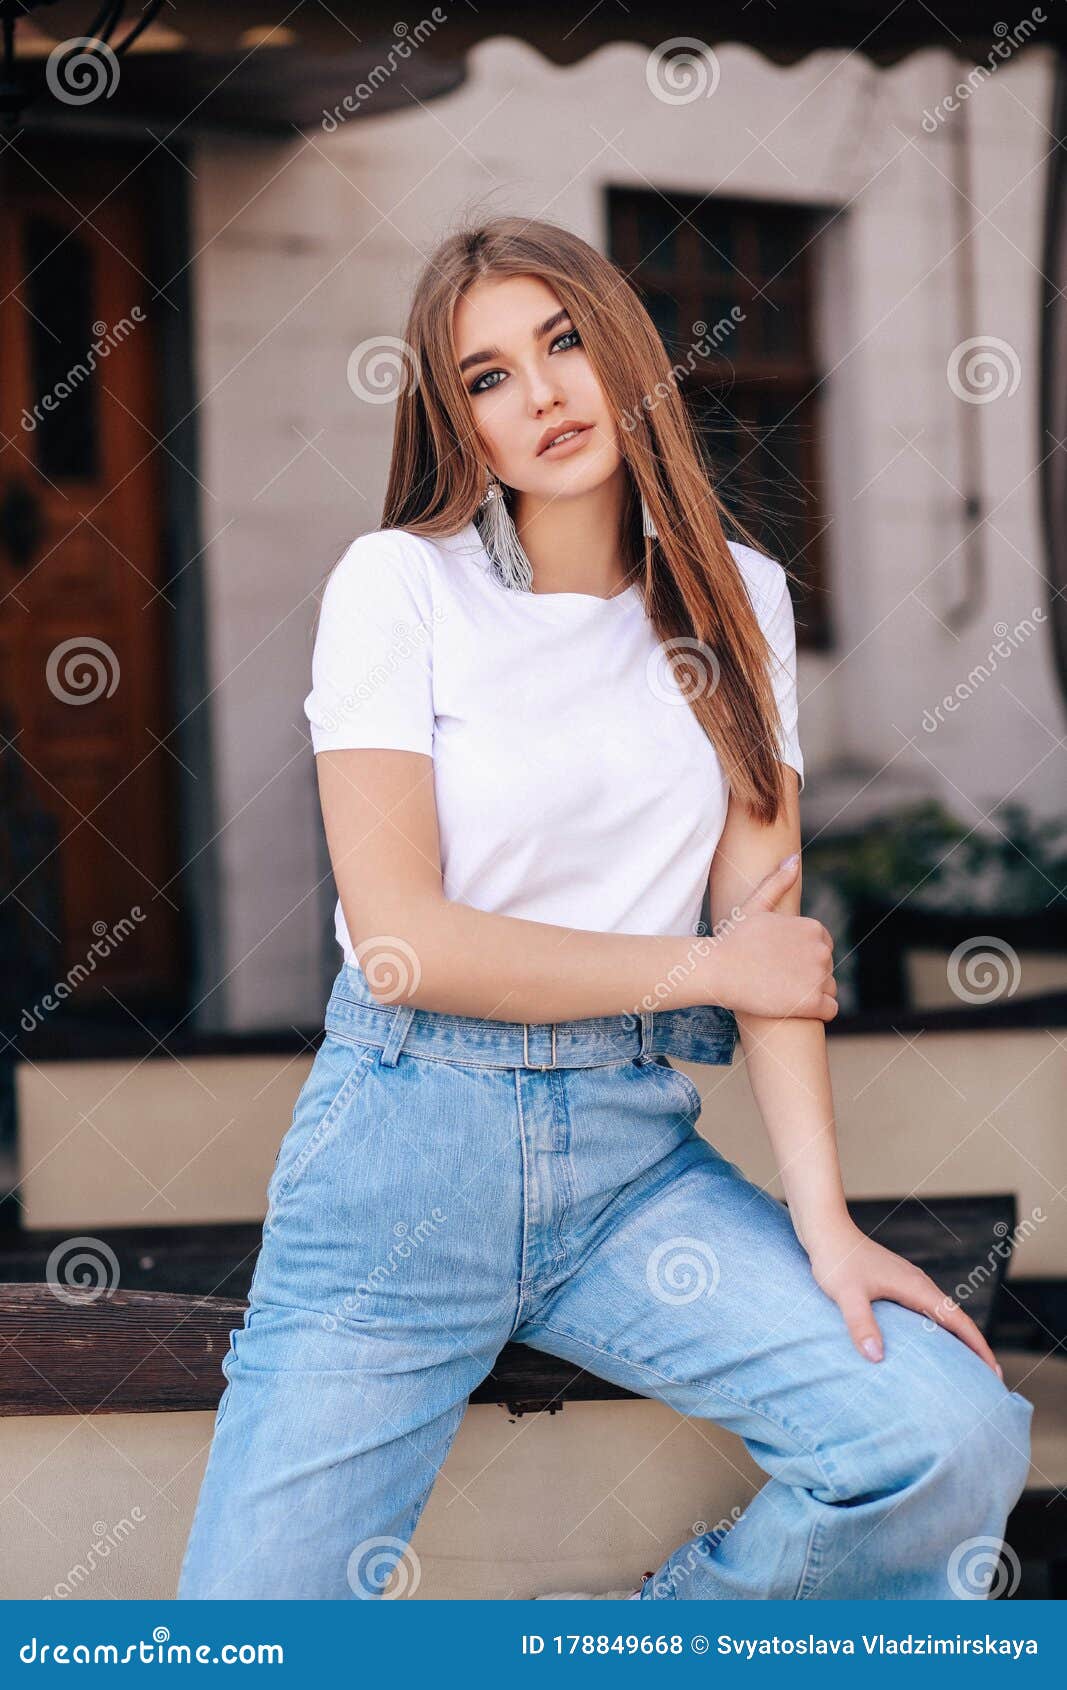 https://thumbs.dreamstime.com/z/bella-mujer-con-pelo-oscuro-en-ropa-informal-posando-la-calle-foto-de-moda-al-aire-libre-una-hermosa-el-camisa-blanca-y-jeans-178849668.jpg